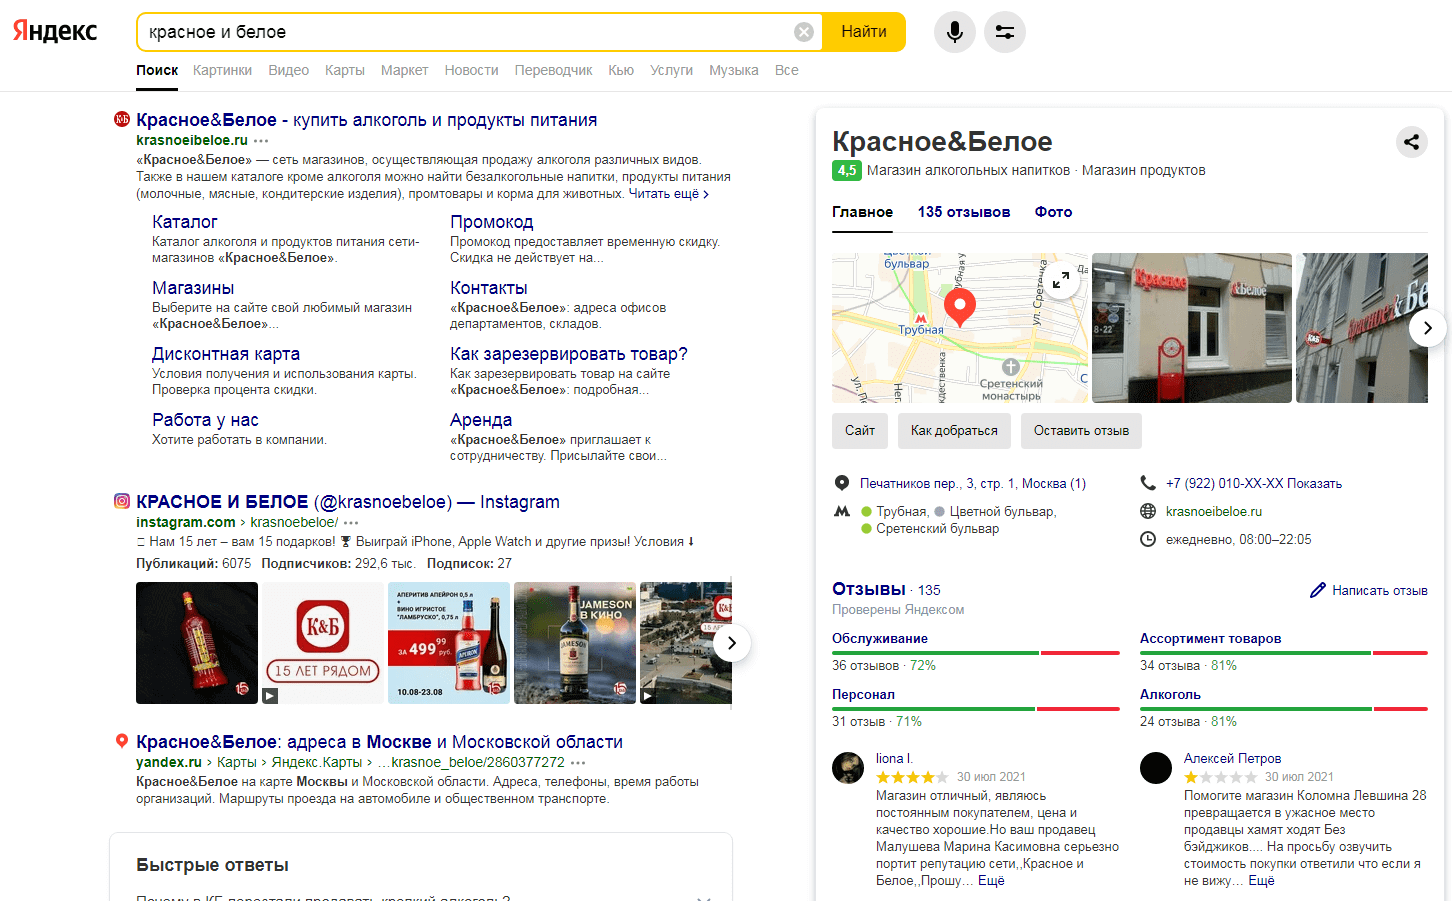 Выдача Яндекса на основе данных из Яндекс.Справочника